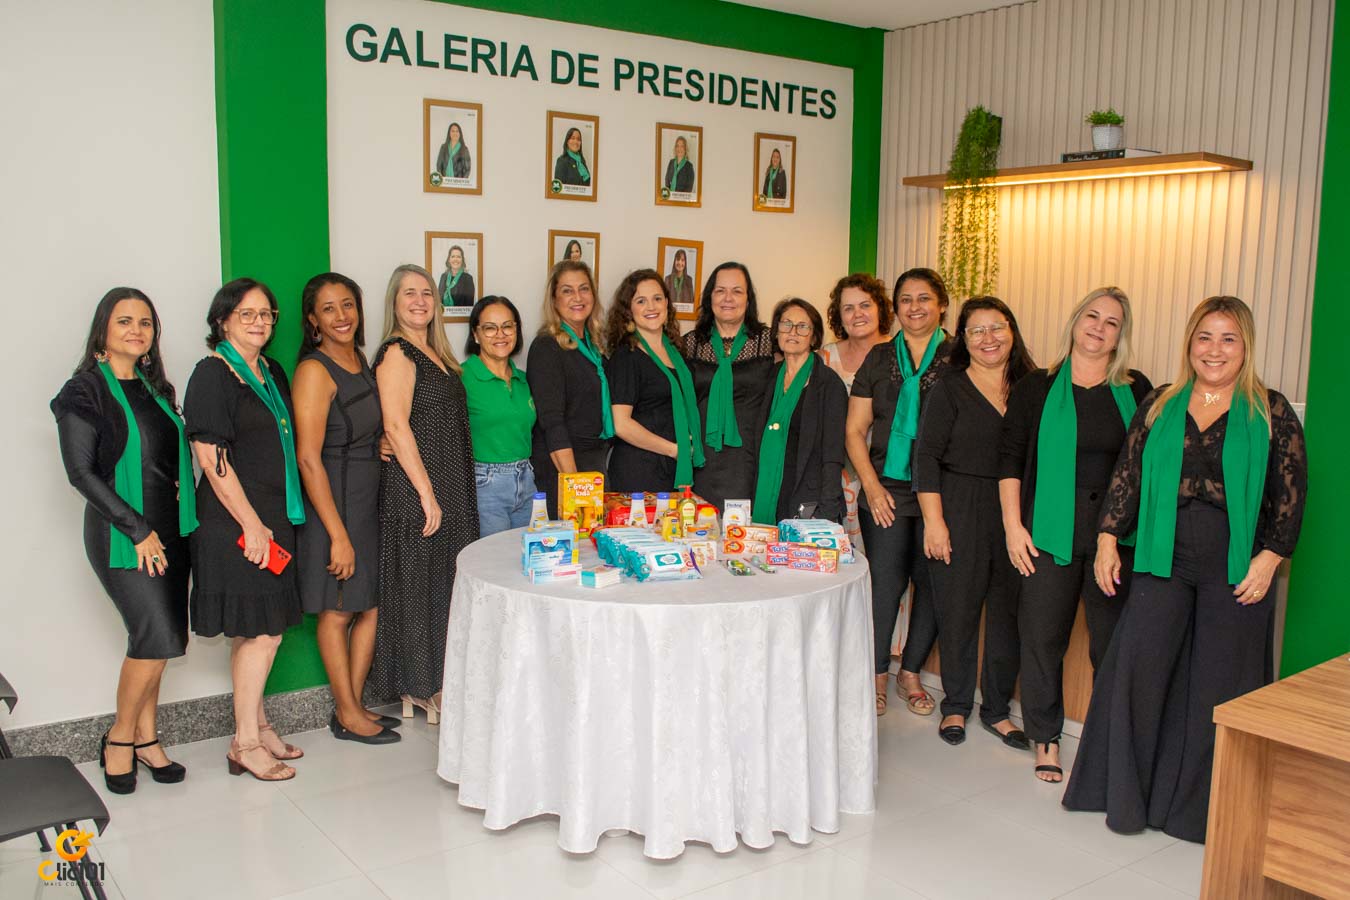 Fraternidade Feminina Cruzeiro do Sul Itabelense em noite festiva